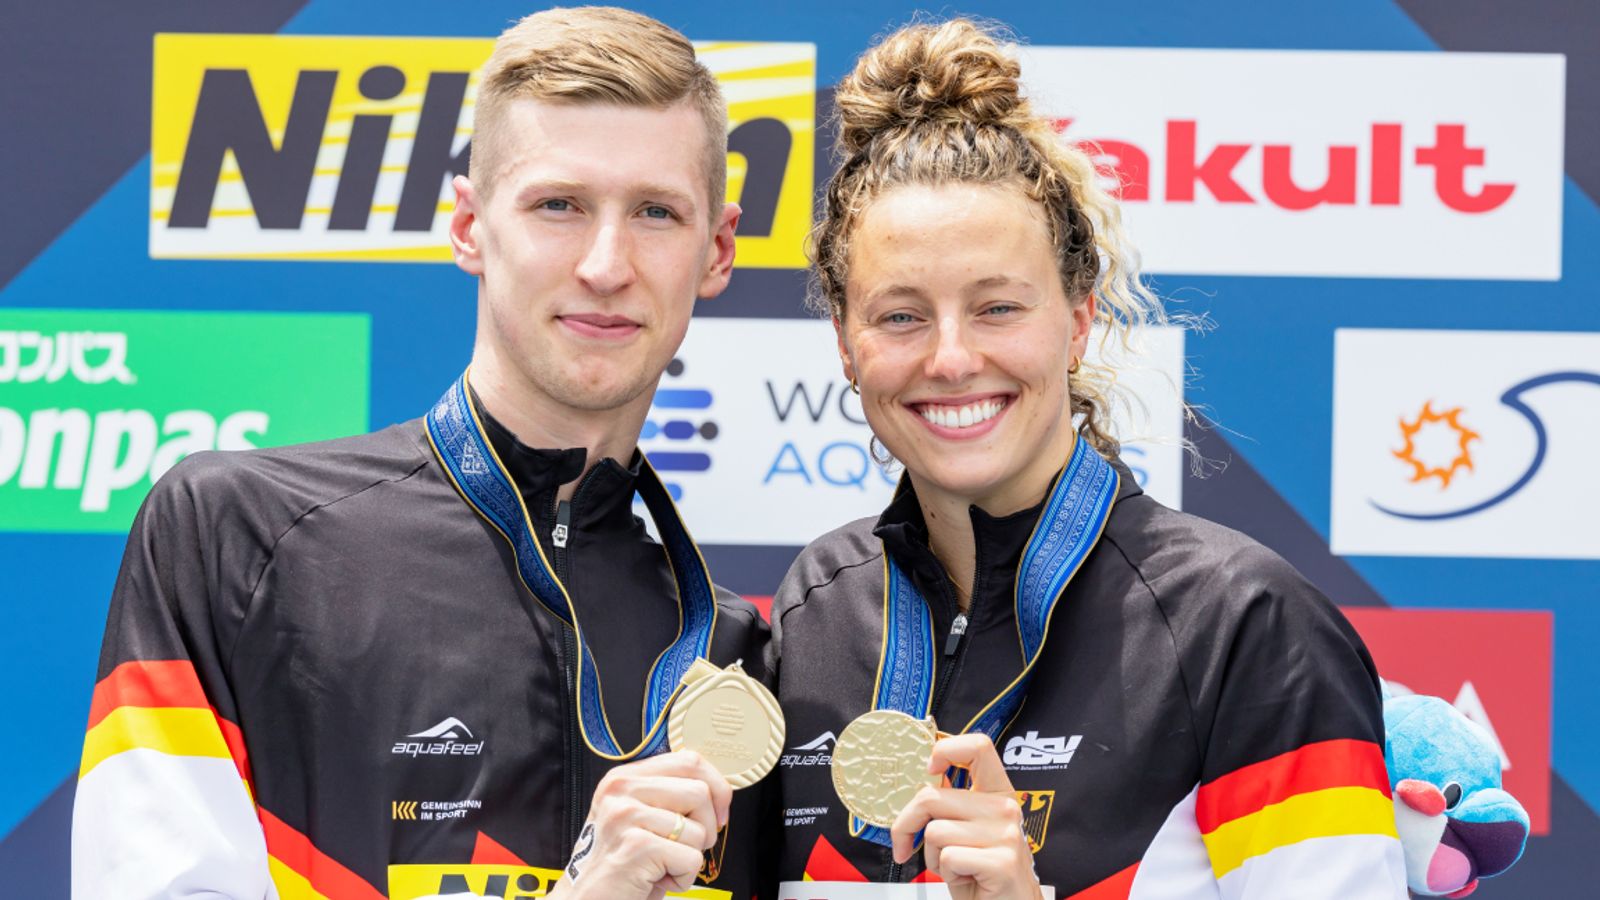 Schwimm-Weltmeisterschaft Florian Wellbrock und Leonie Beck schwimmen zu Vierfach-Gold Schwimmen News Sky Sport